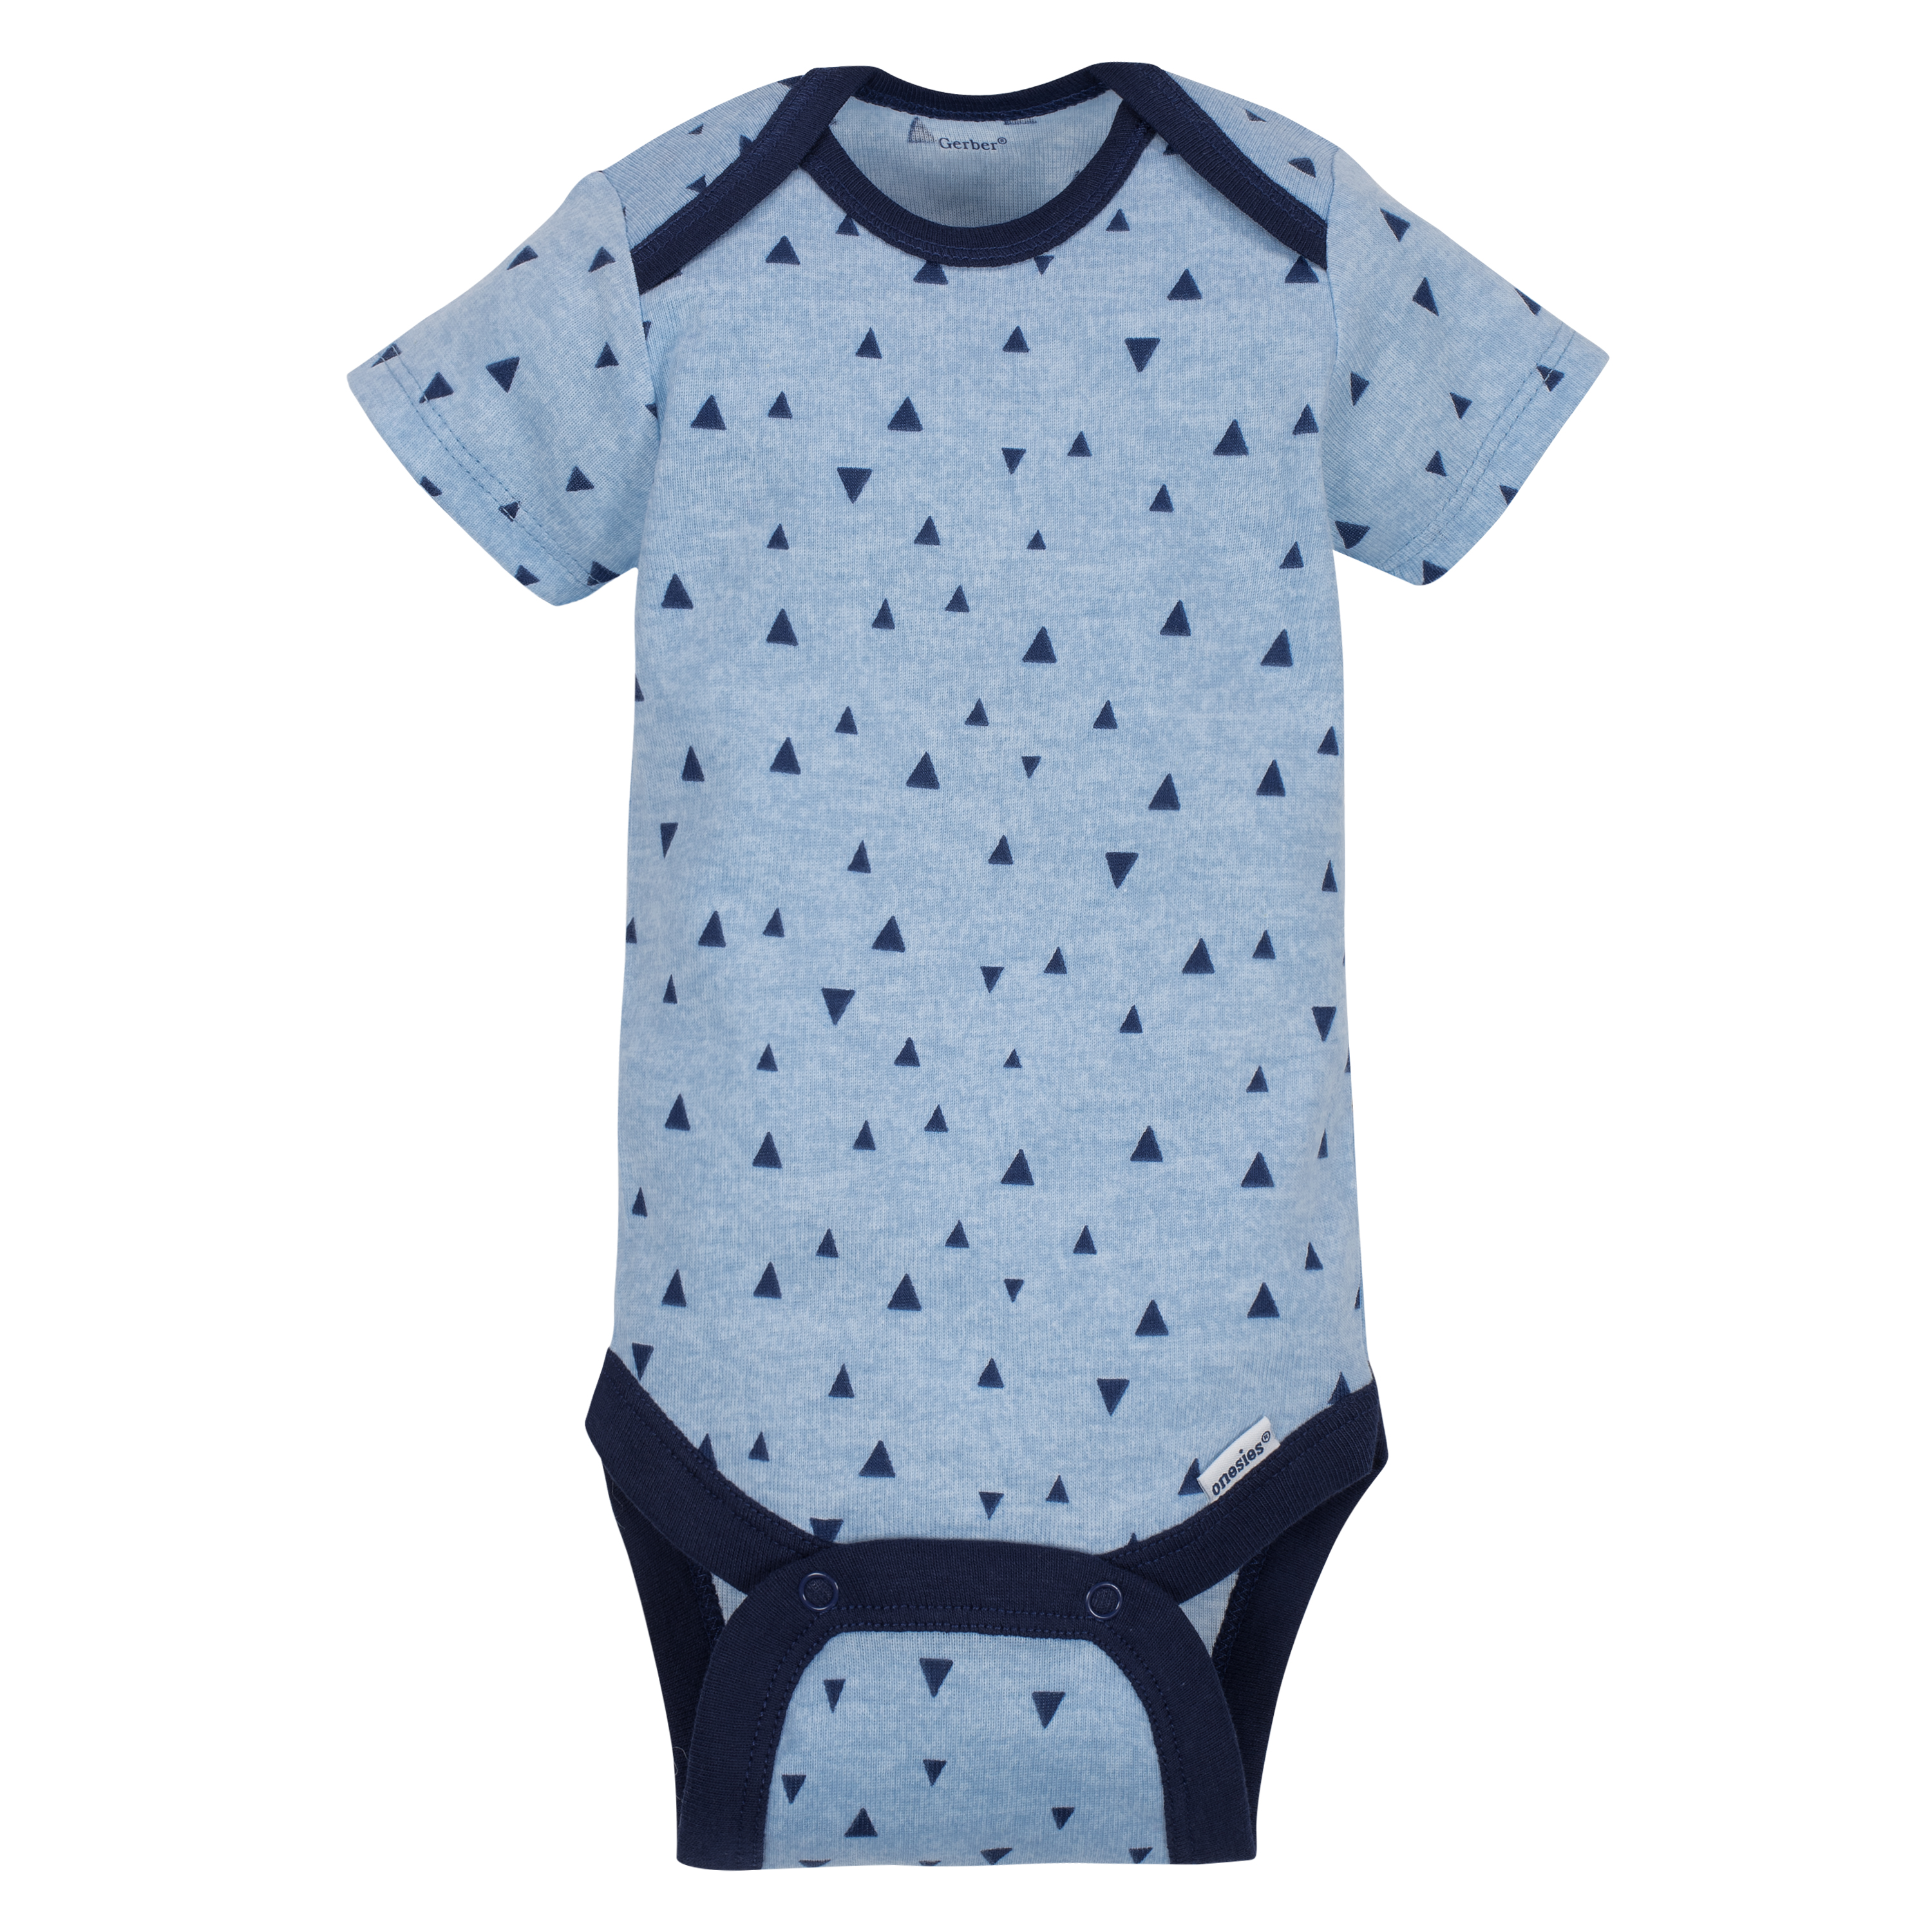 Gerber Baby Boy Short Sleeve Onesies Bodysuits, 5-Pack - image 6 of 11